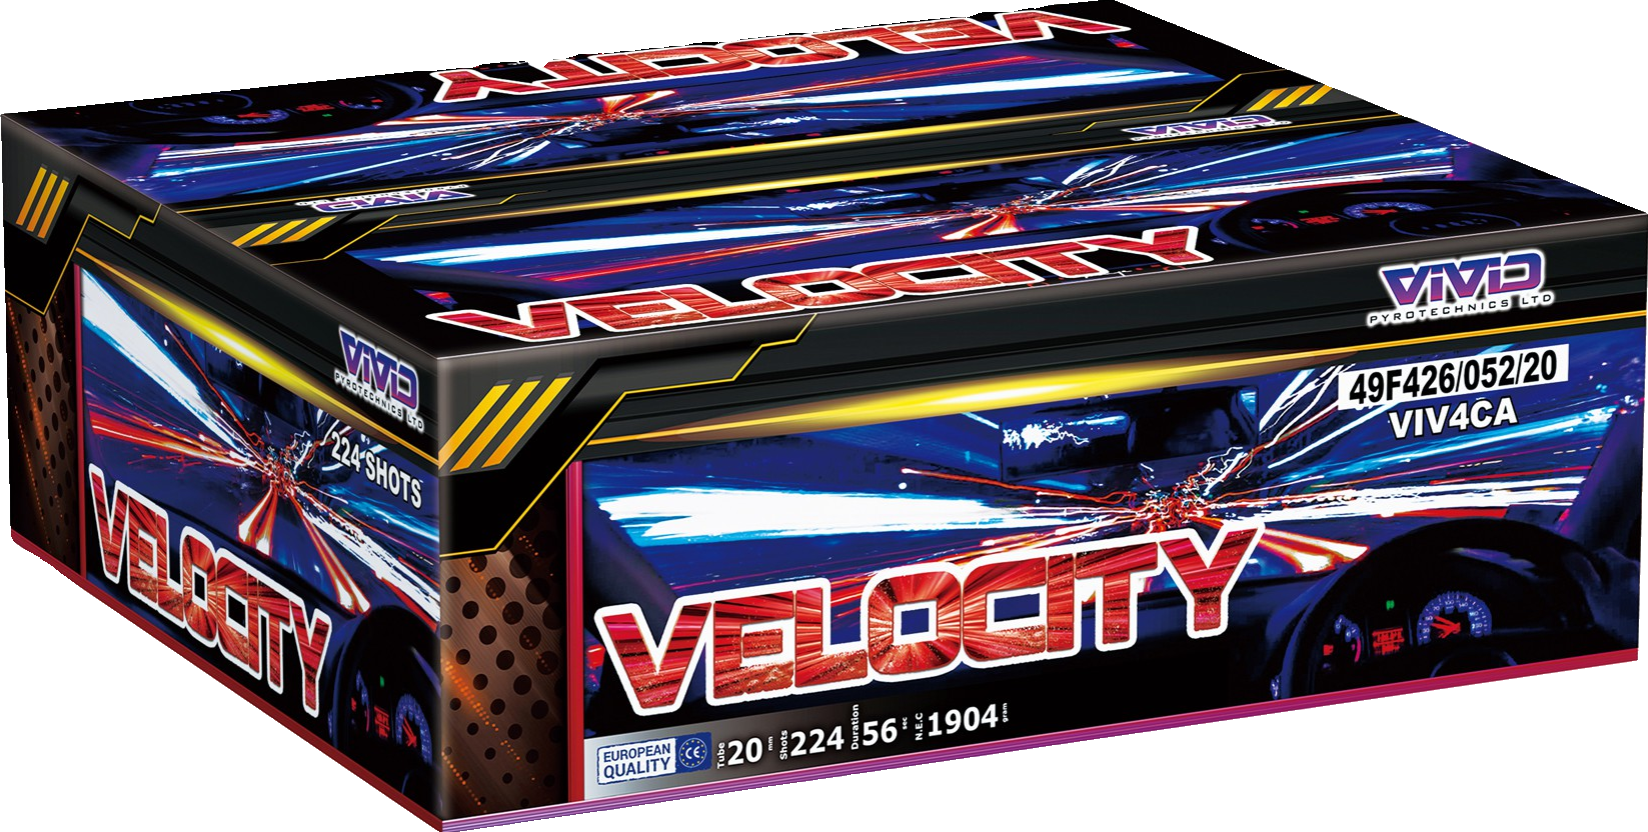 Velocity by Vivid Pyrotechnics